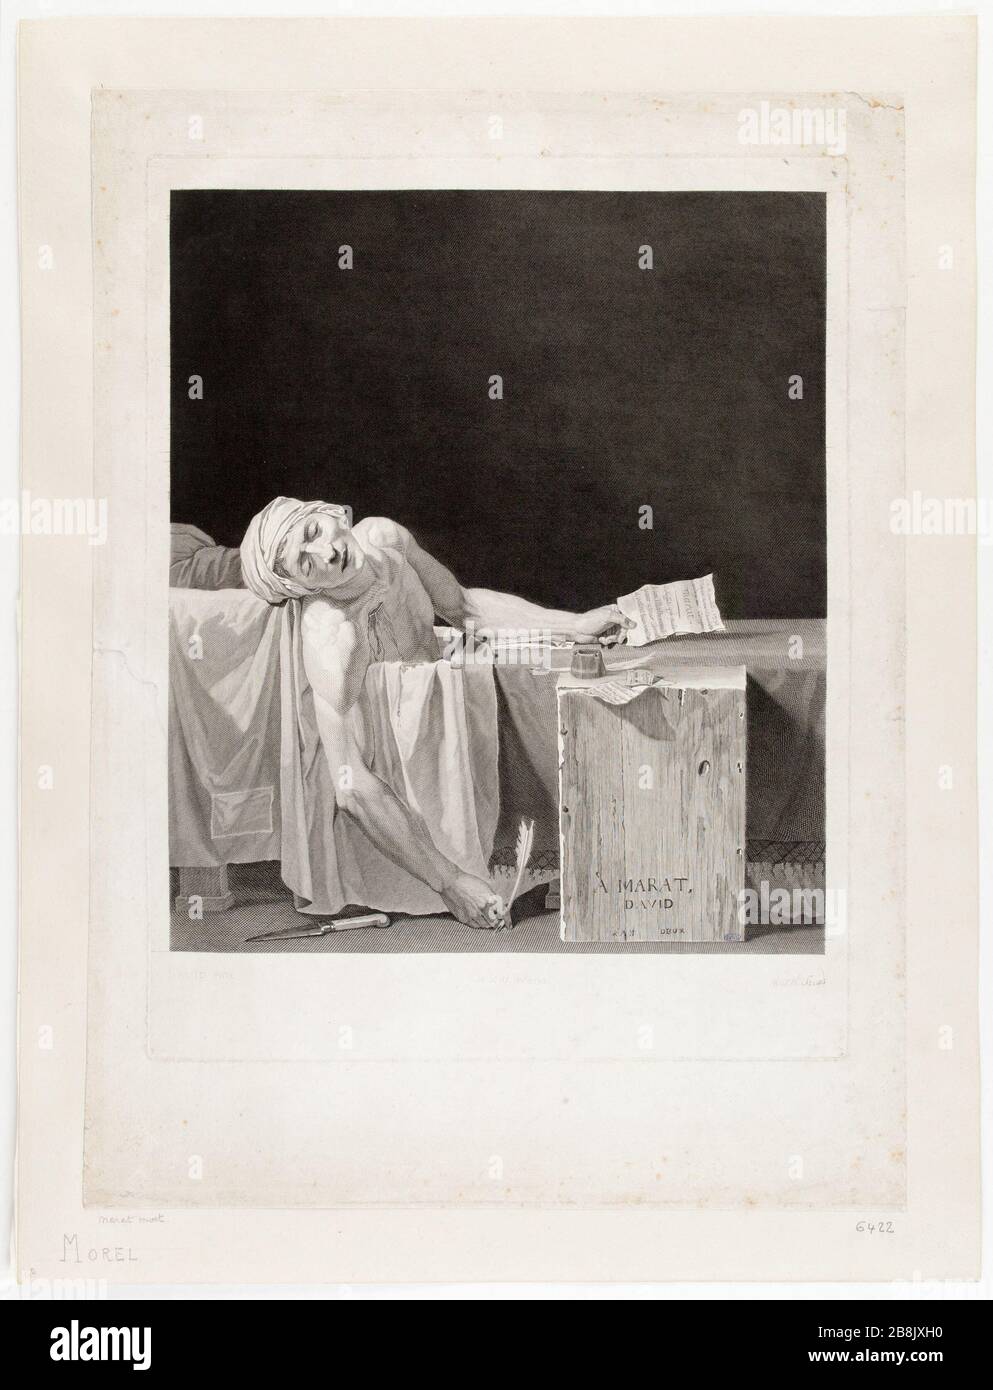 Marat assassinated by Jacques Louis David Antoine Alexandre Morel (1765-1829). 'Marat assassiné', d’après Jacques Louis David. Burin. 1793. Musée des Beaux-Arts de la Ville de Paris, Petit Palais. Stock Photo